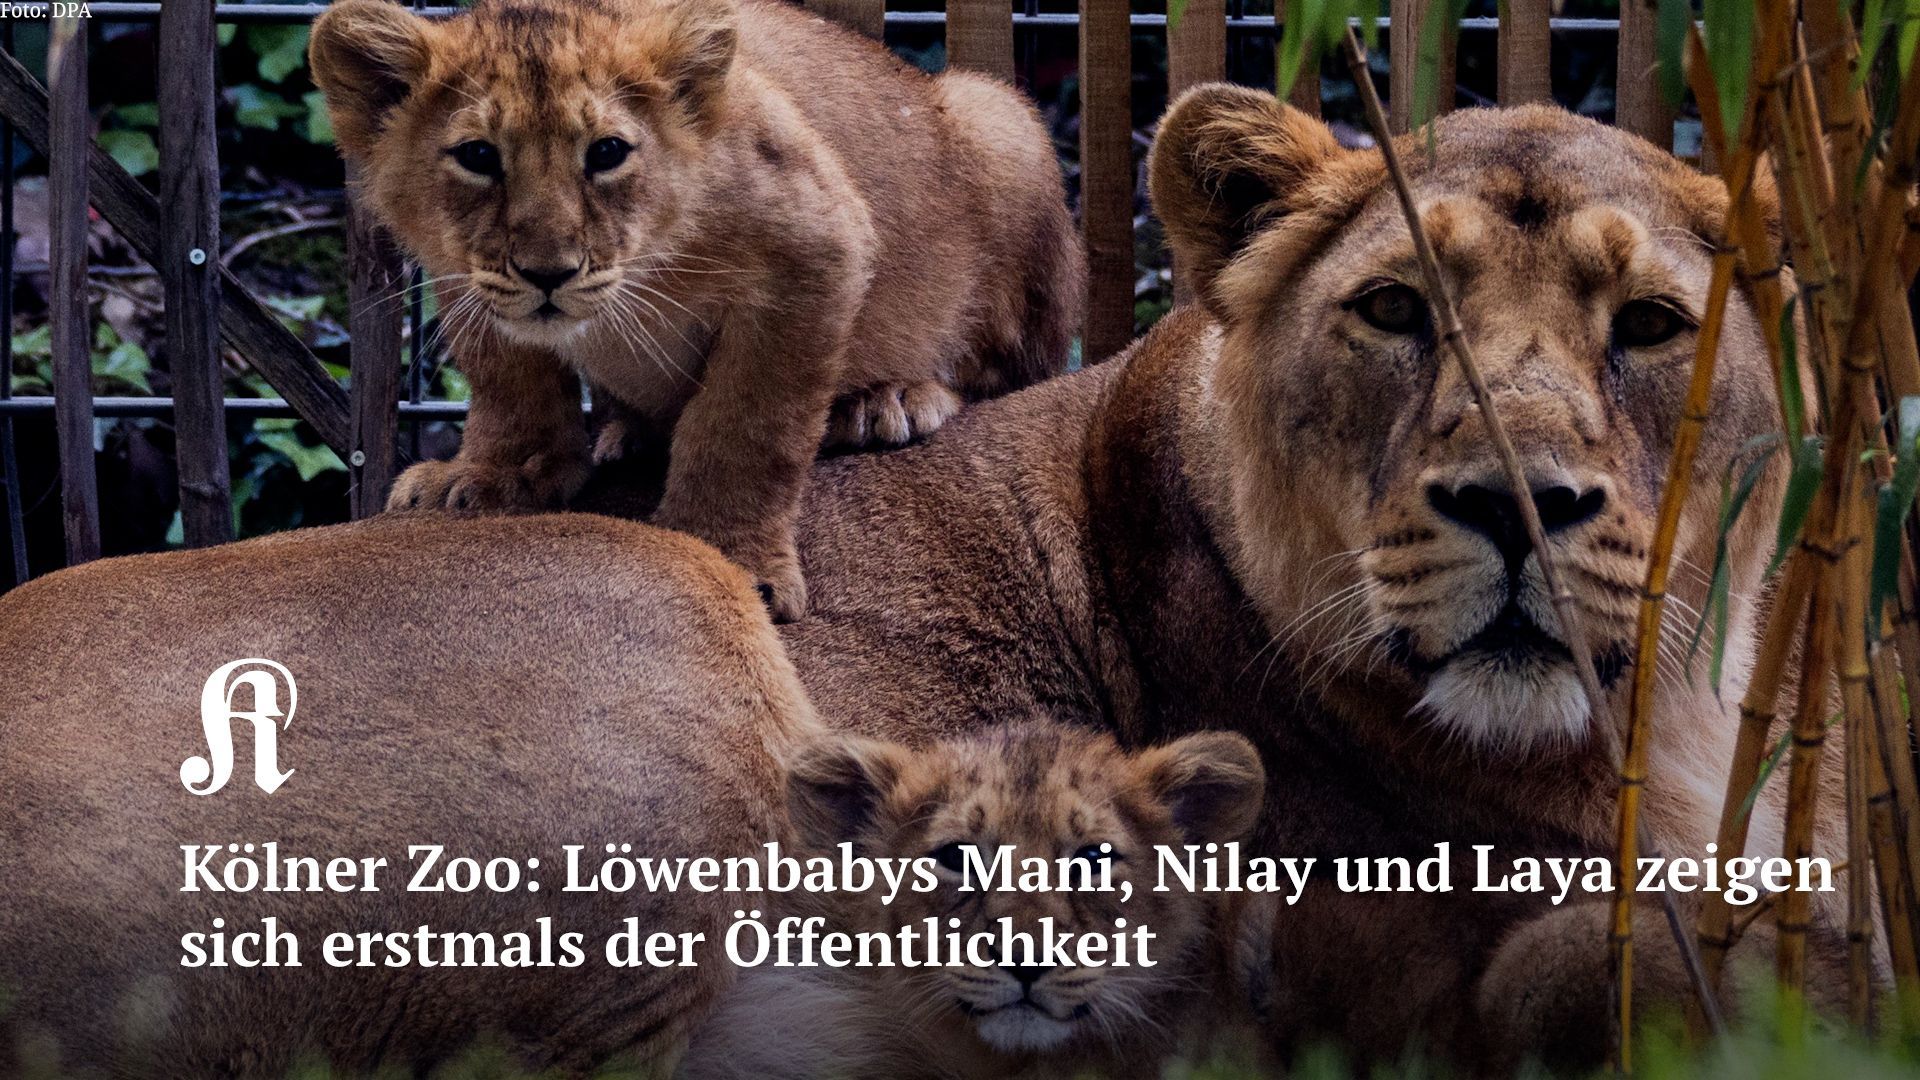 Kölner Zoo: Löwenbabys Mani, Nilay und Laya zeigen sich erstmals der Öffentlichkeit